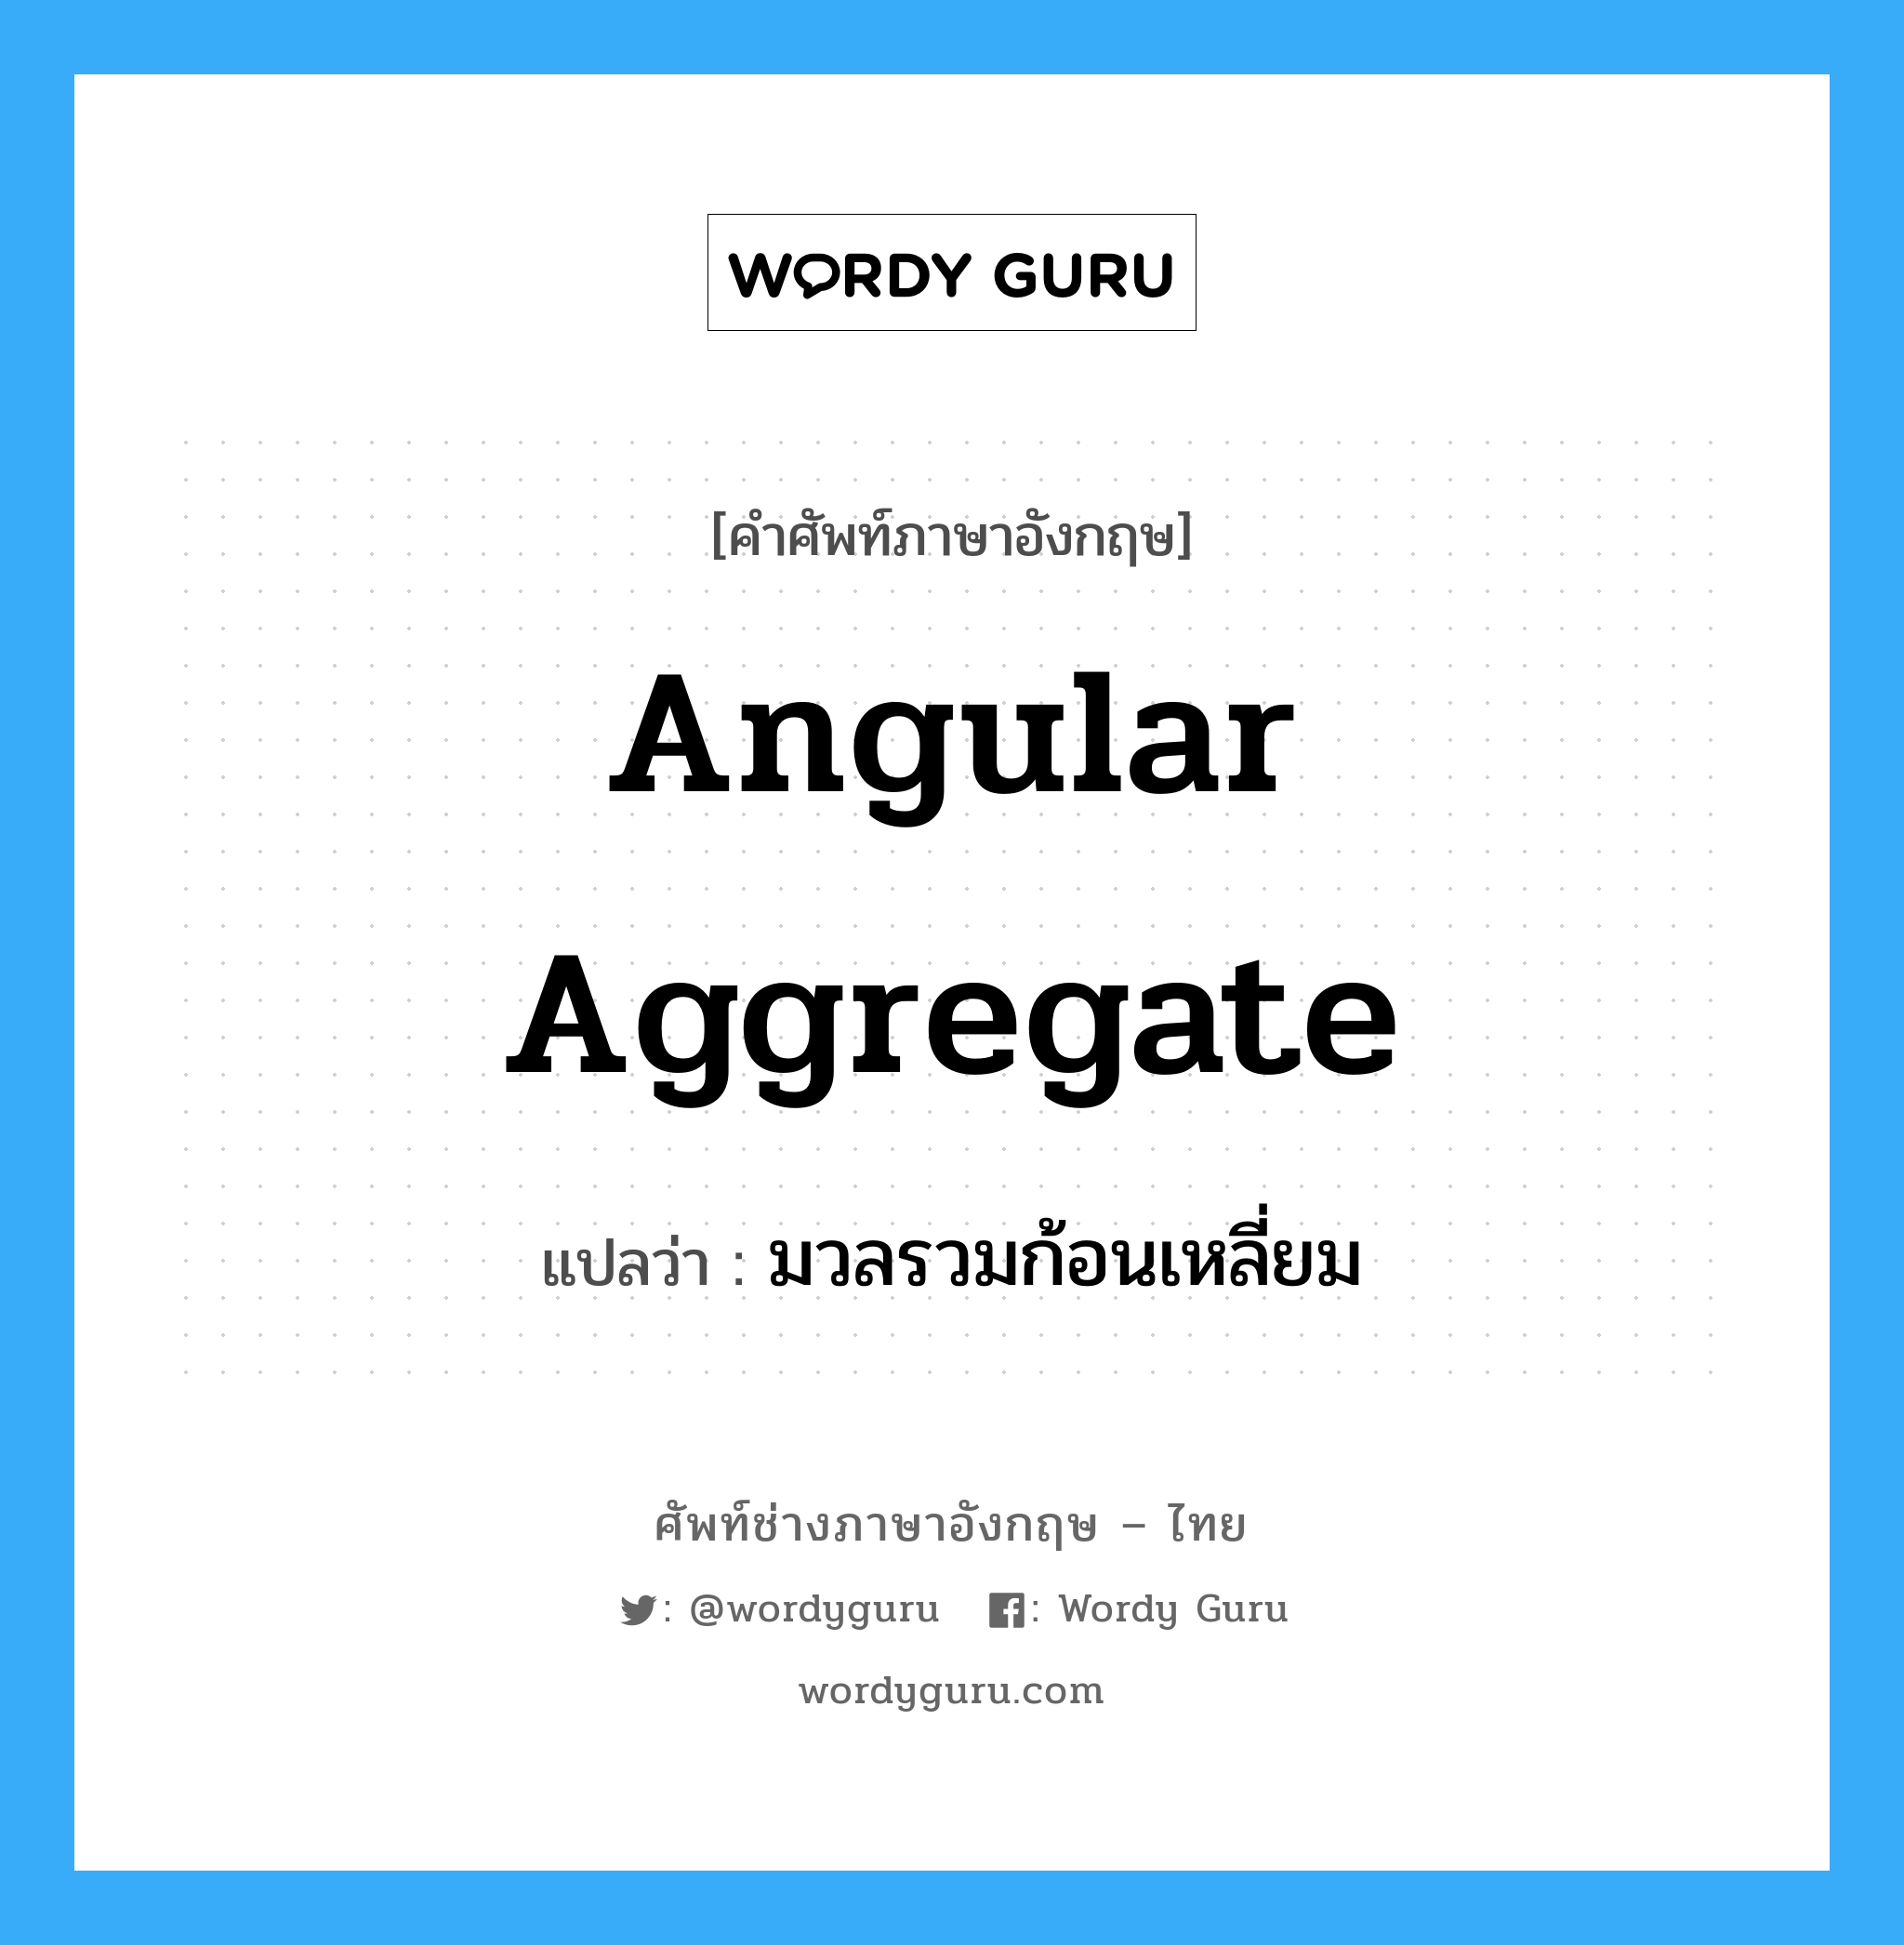 มวลรวมก้อนเหลี่ยม ภาษาอังกฤษ?, คำศัพท์ช่างภาษาอังกฤษ - ไทย มวลรวมก้อนเหลี่ยม คำศัพท์ภาษาอังกฤษ มวลรวมก้อนเหลี่ยม แปลว่า angular aggregate